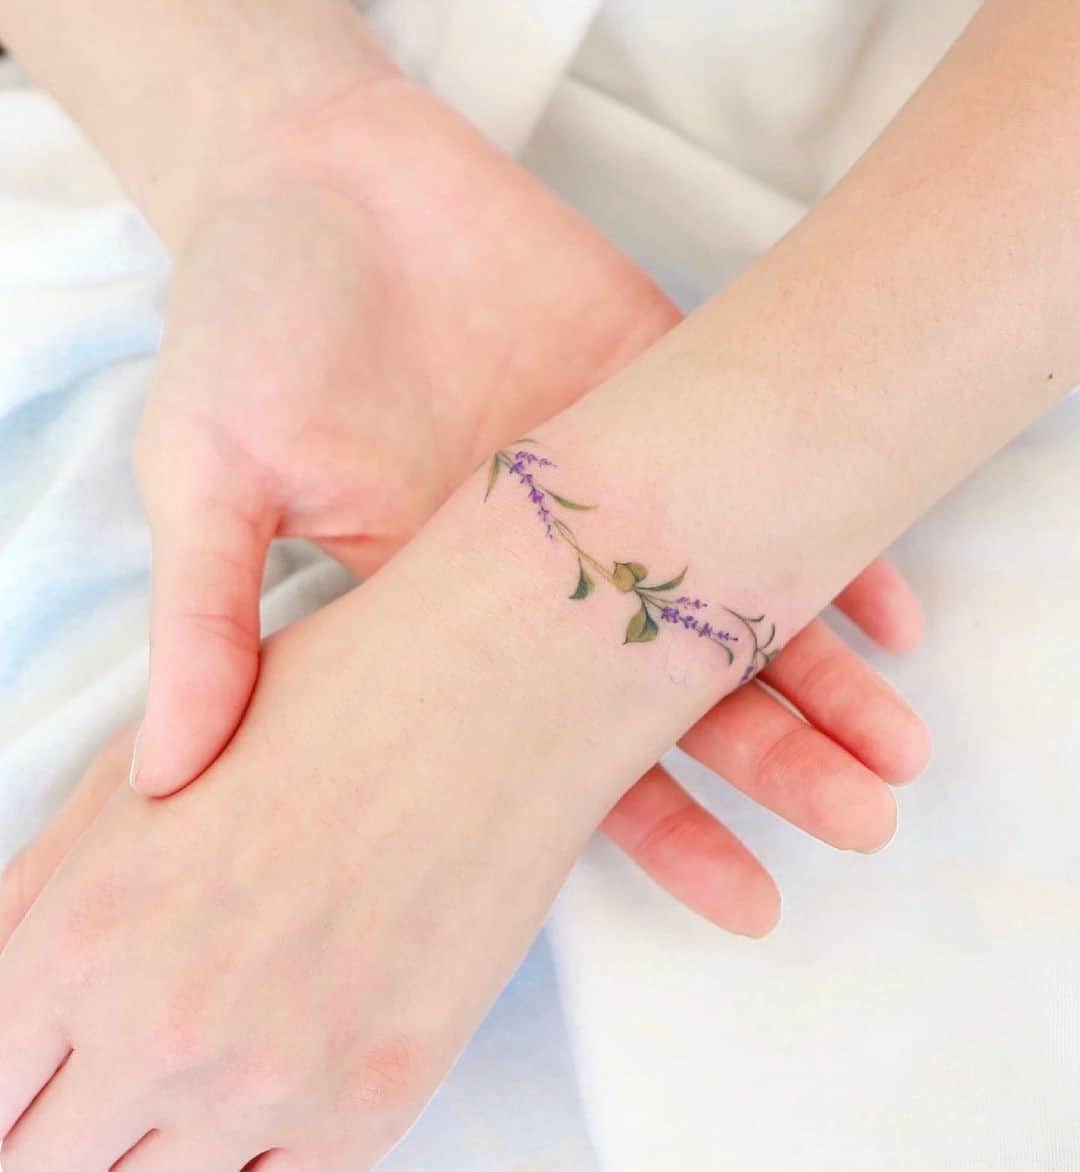 Single needle bracelet tattoo.